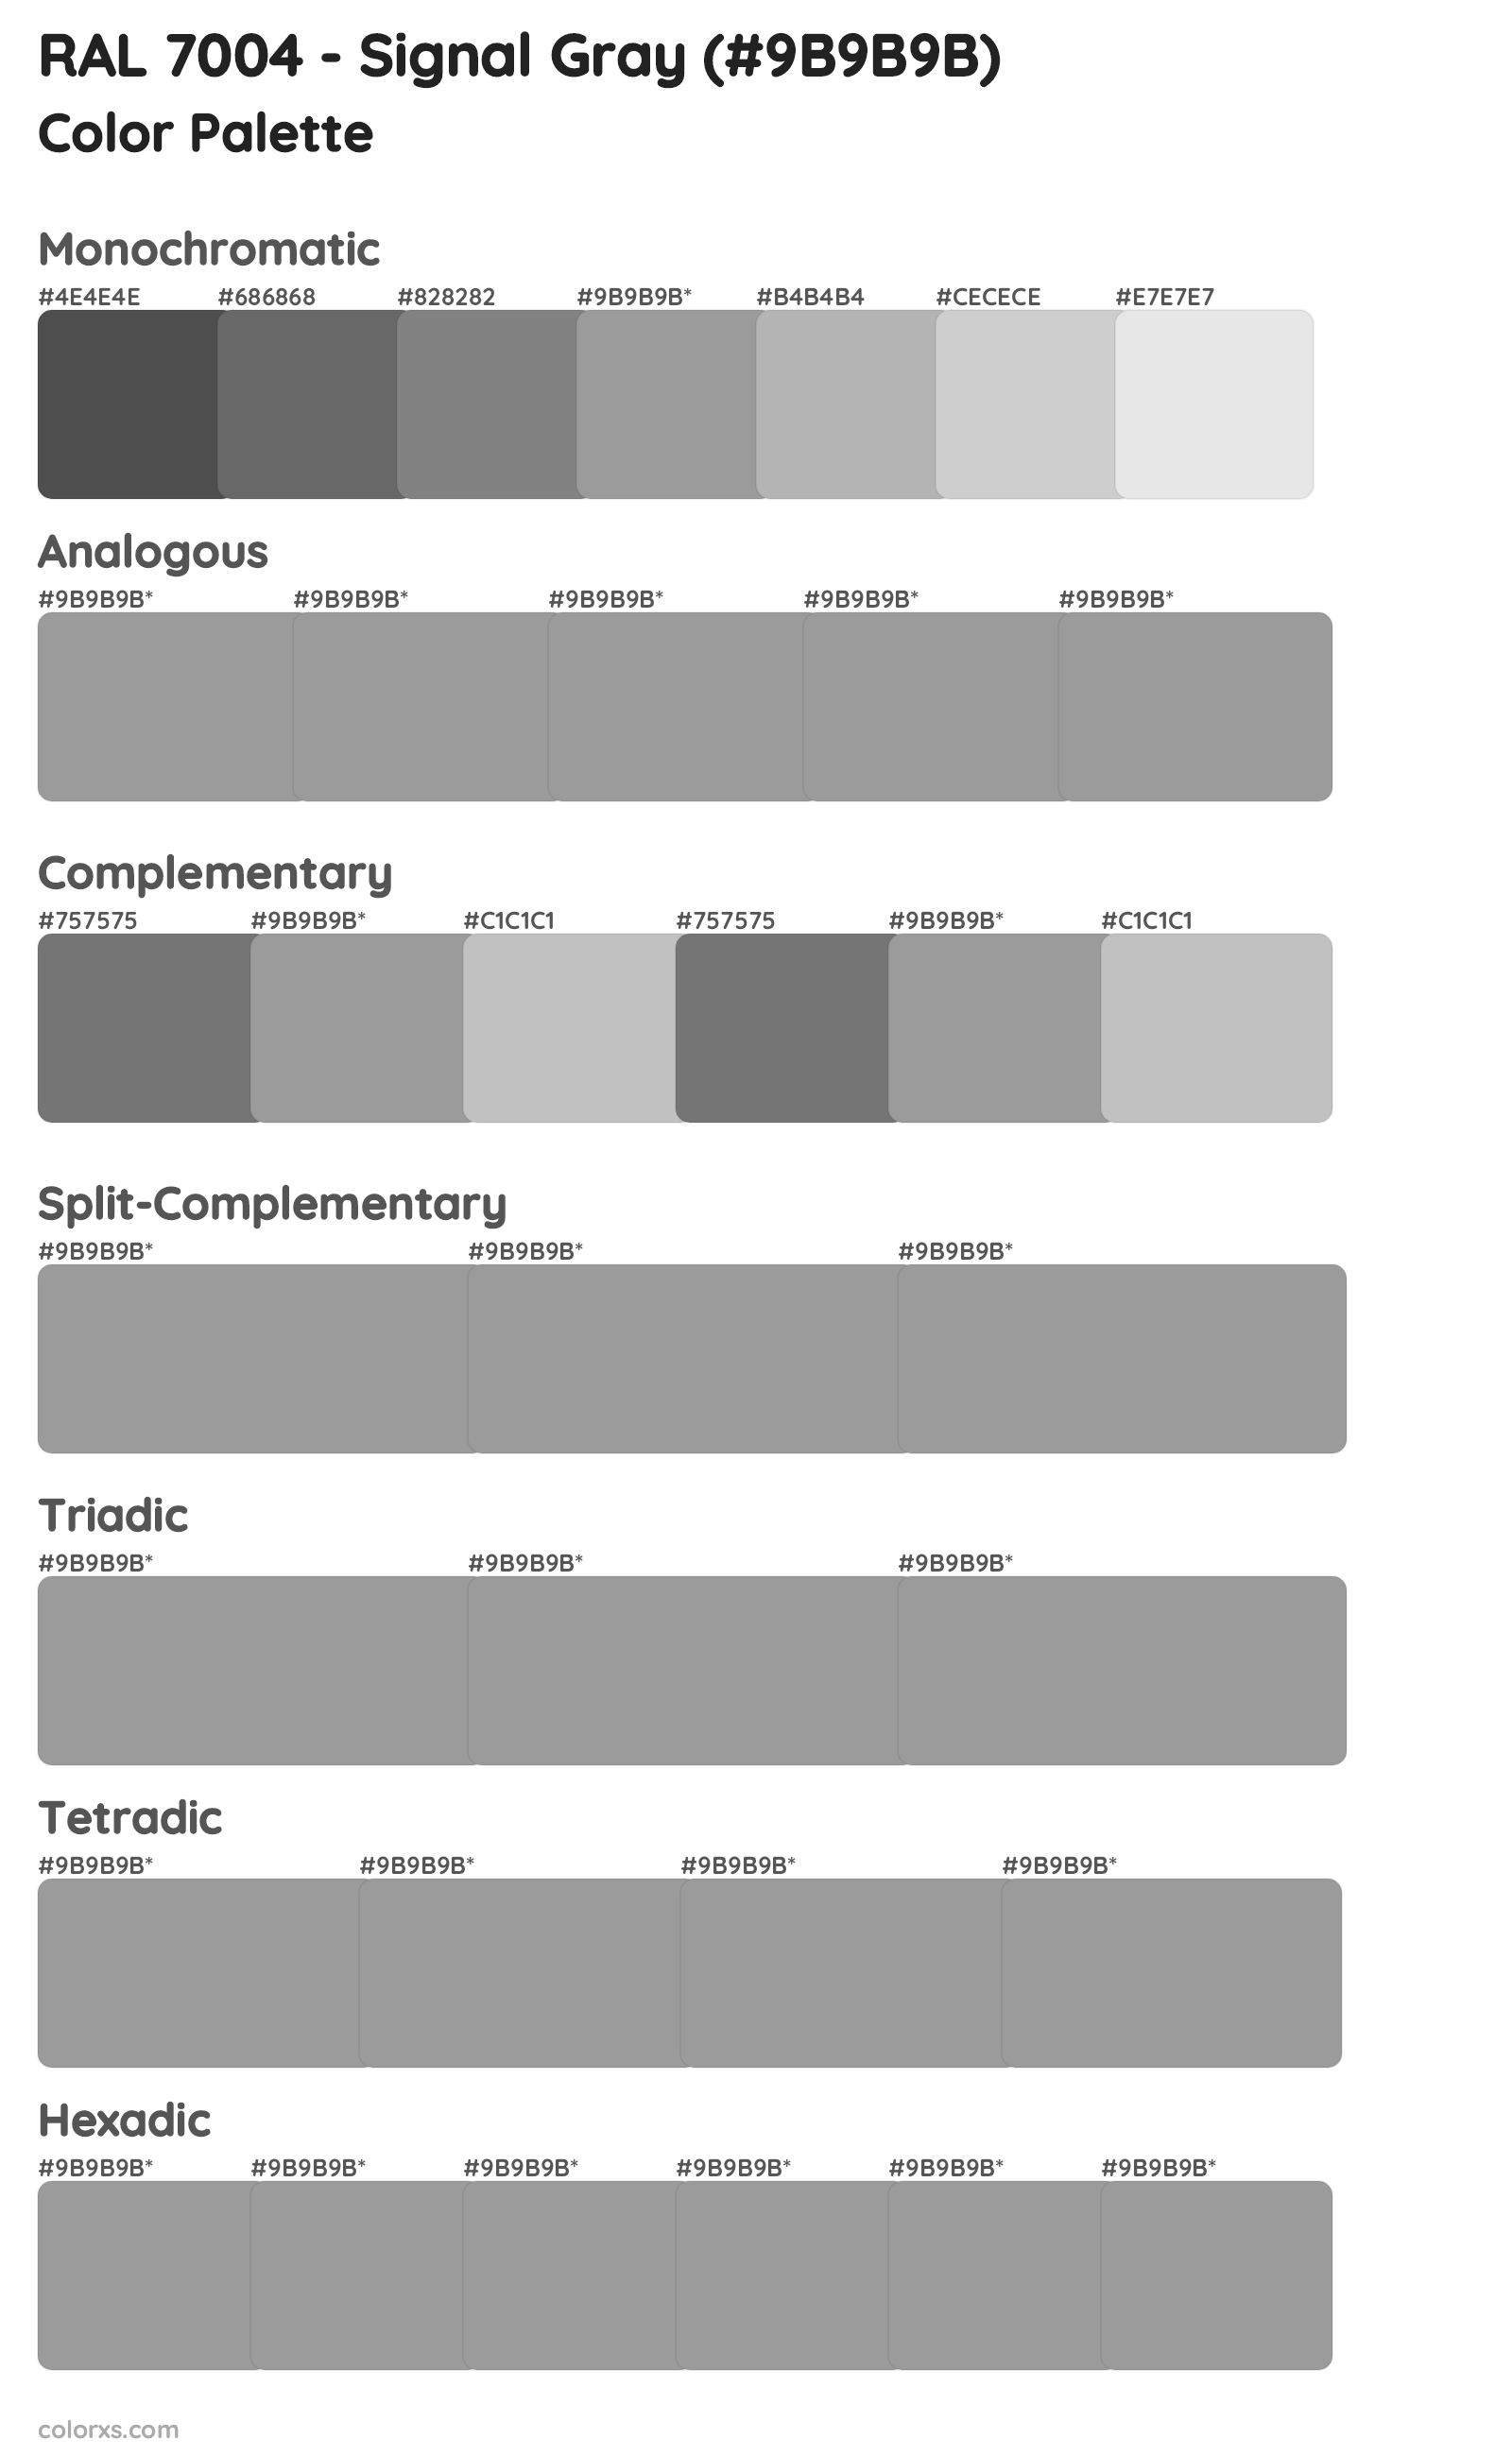 RAL 7004 - Signal Gray Color Scheme Palettes